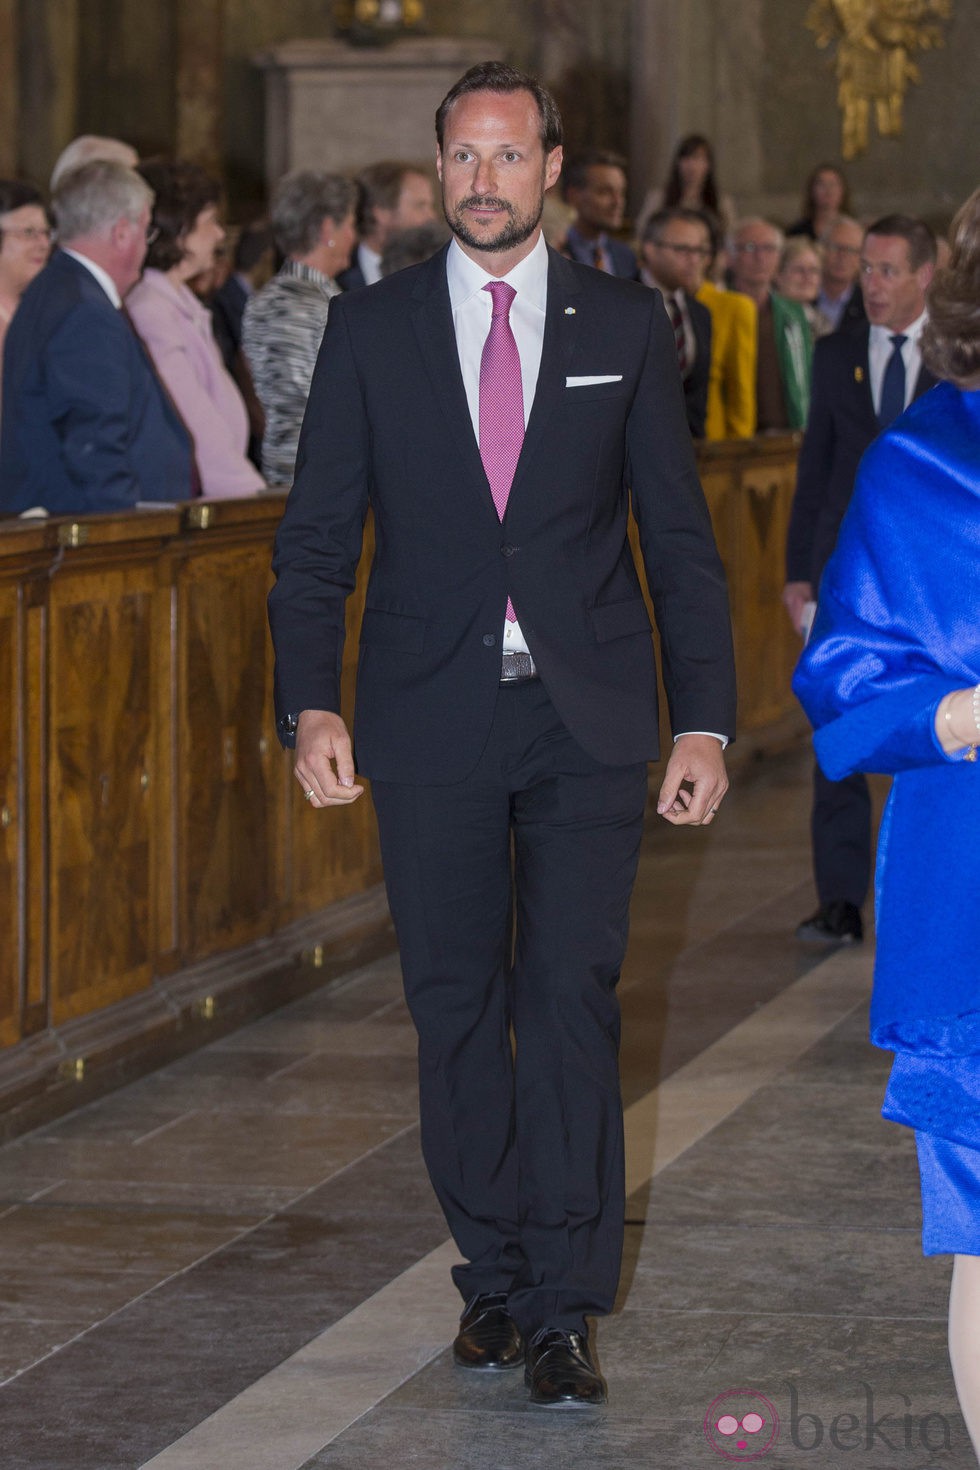 El Príncipe Haakon en la celebración del 200 aniversario de la Constitución de Noruega